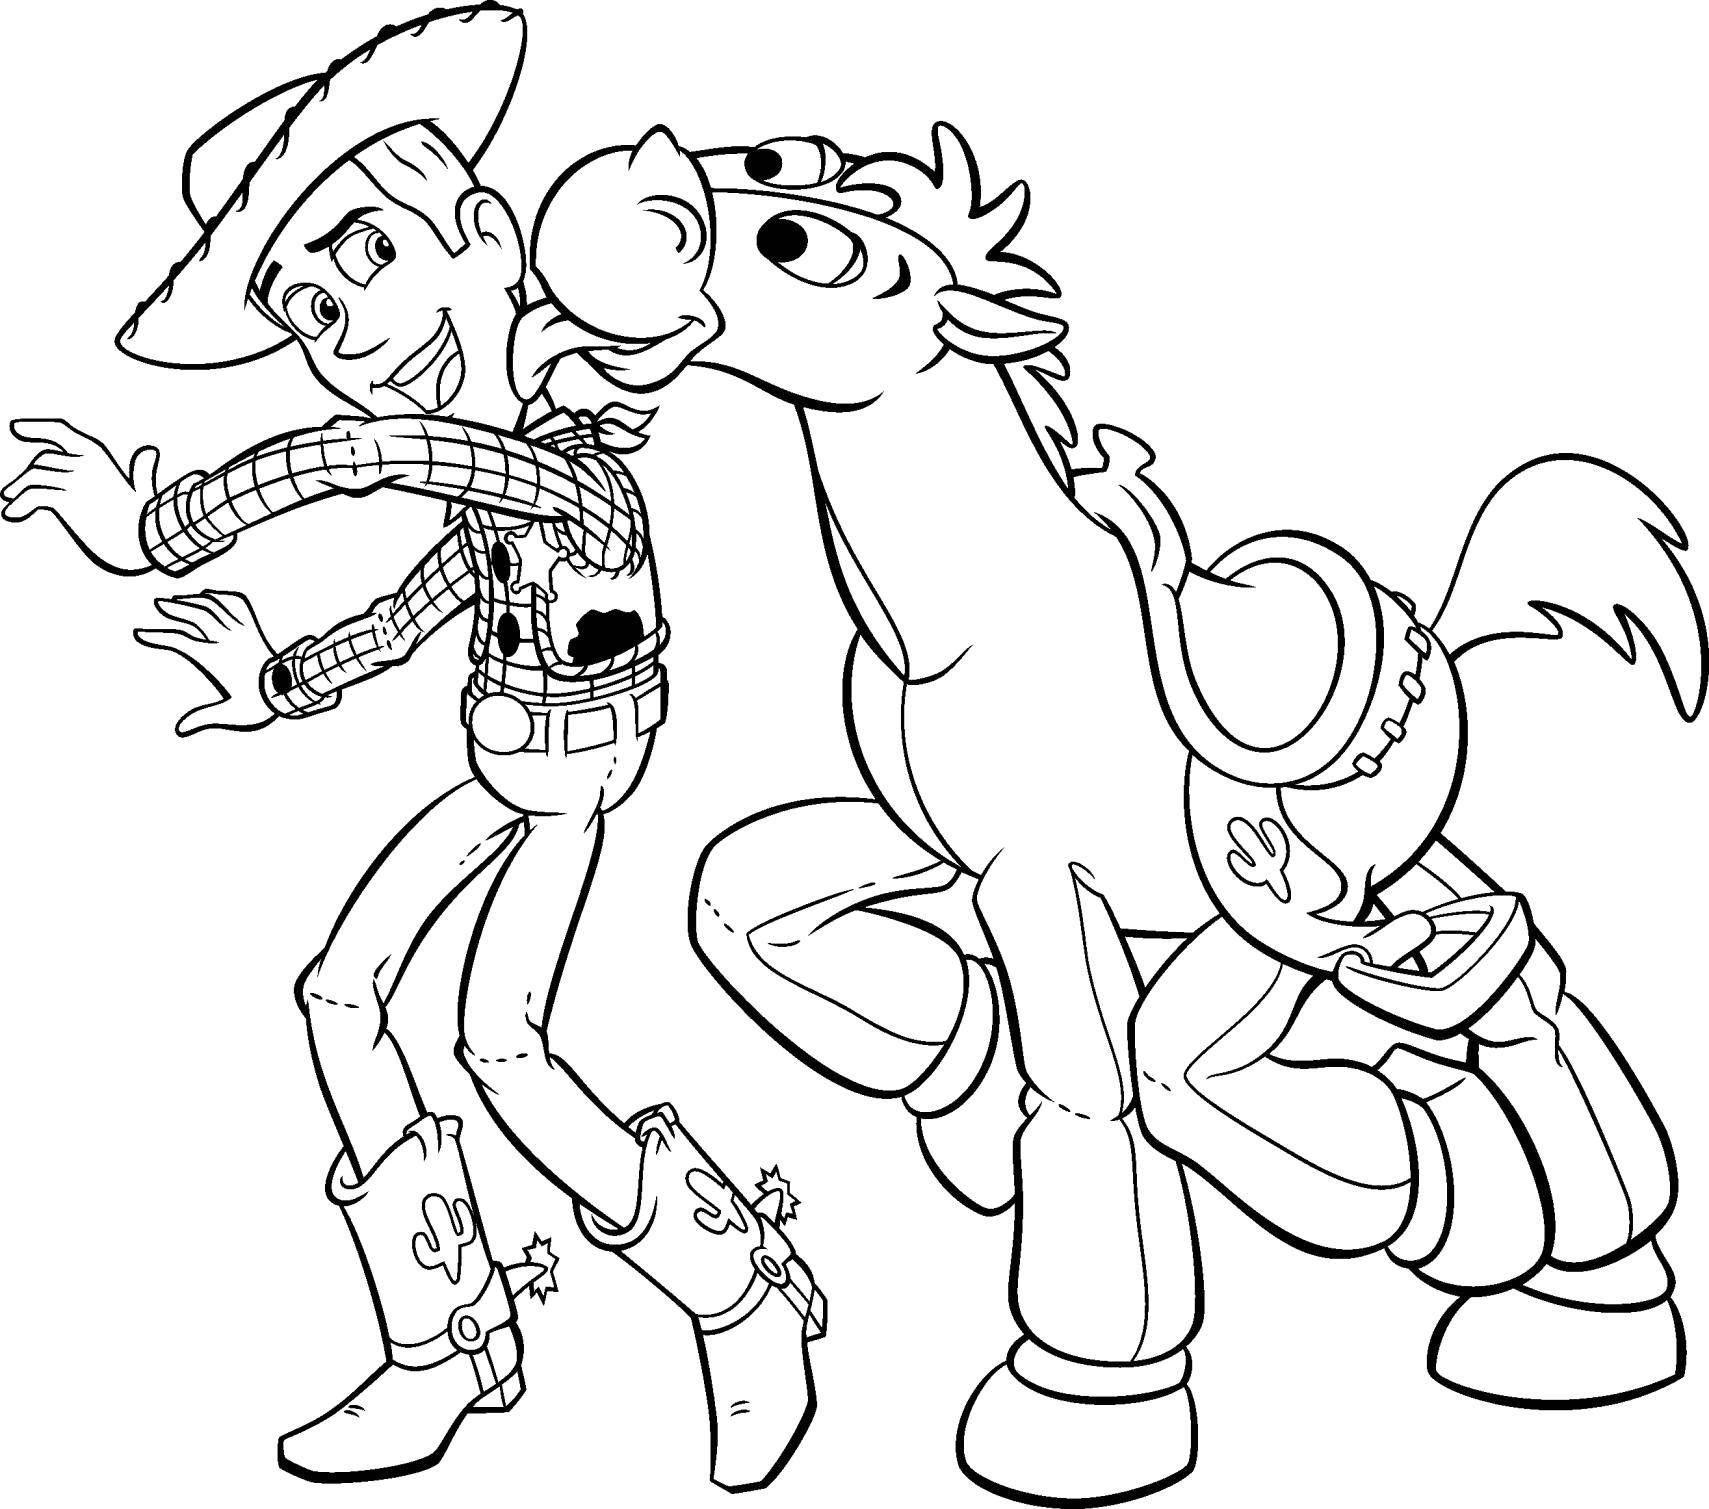 Название: Раскраска Шериф вуди с конём. Категория: Диснеевские раскраски. Теги: Персонаж из мультфильма, История игрушек .